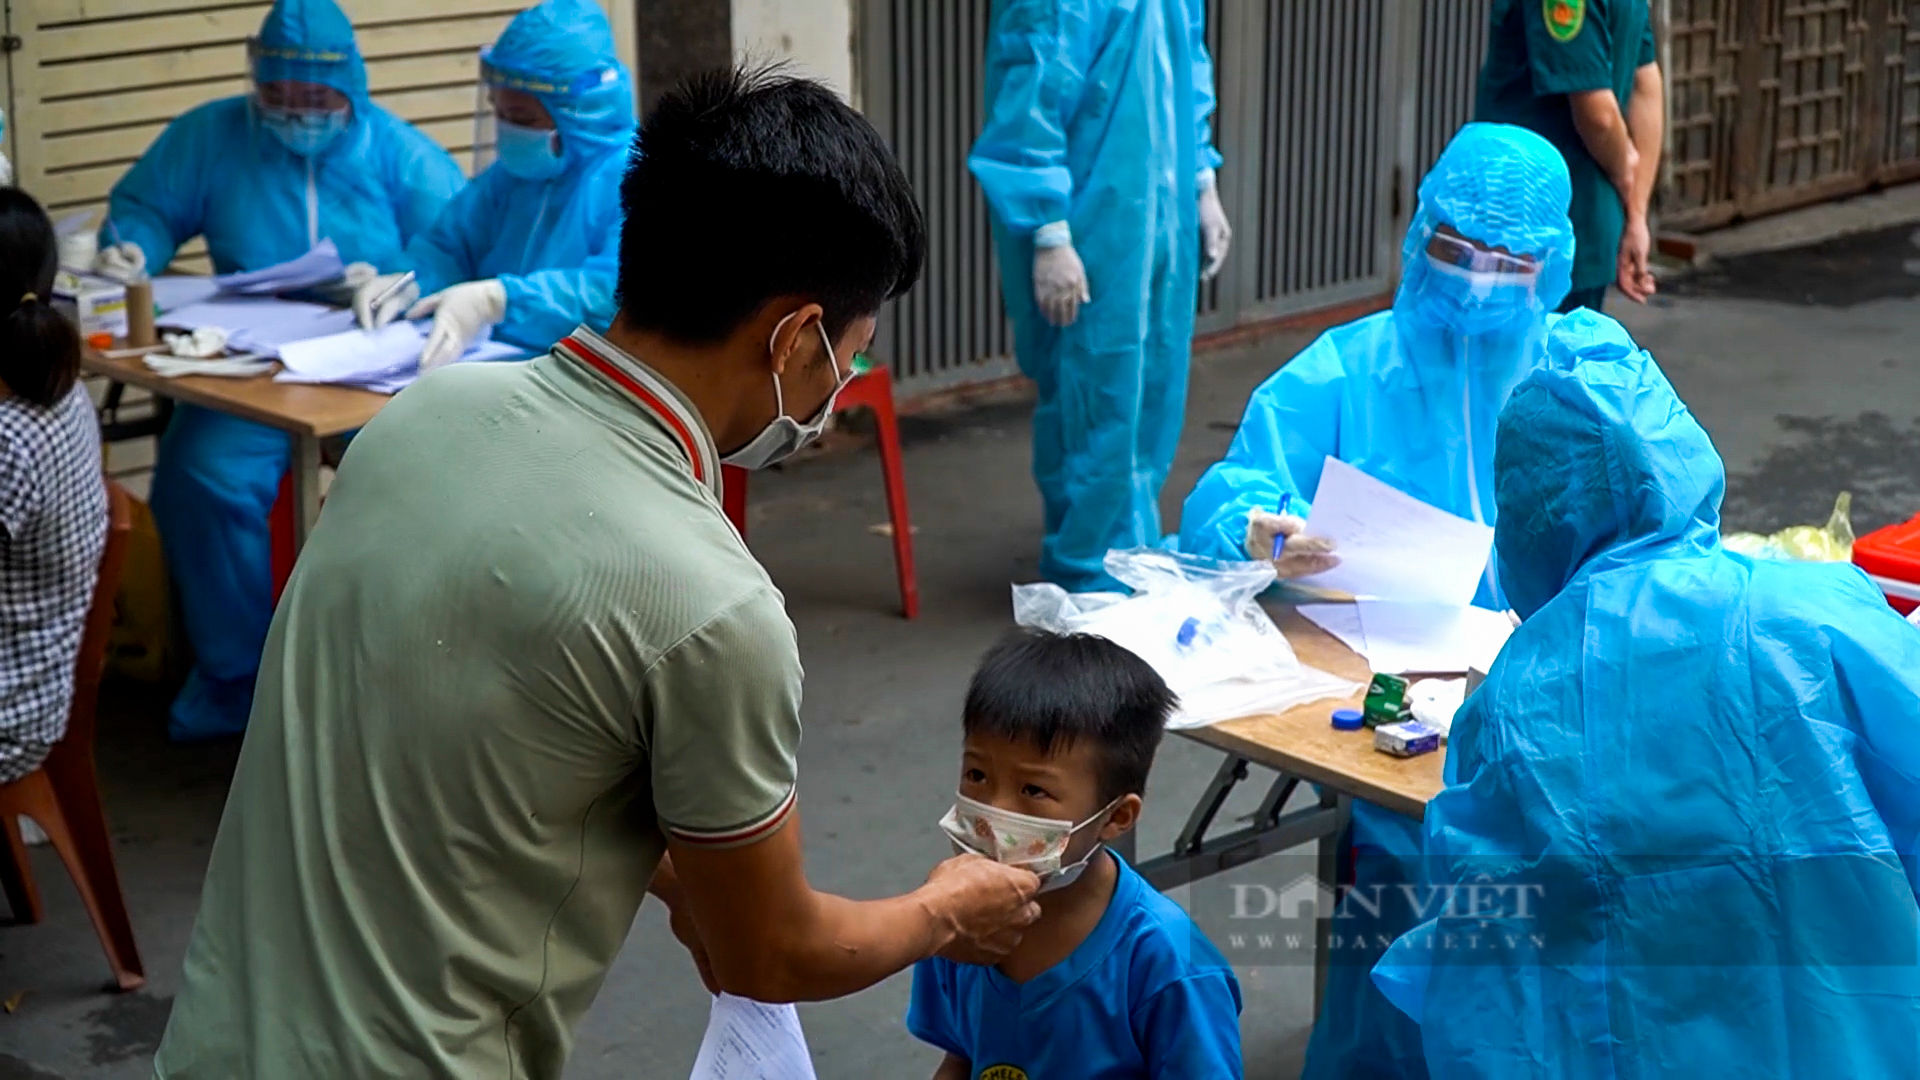 Hà Nội: Phong tỏa, lấy mẫu xét nghiệm khu vực 4.000 dân vì người phụ nữ bán bún ốc dương tính SARS-CoV-2 - Ảnh 8.